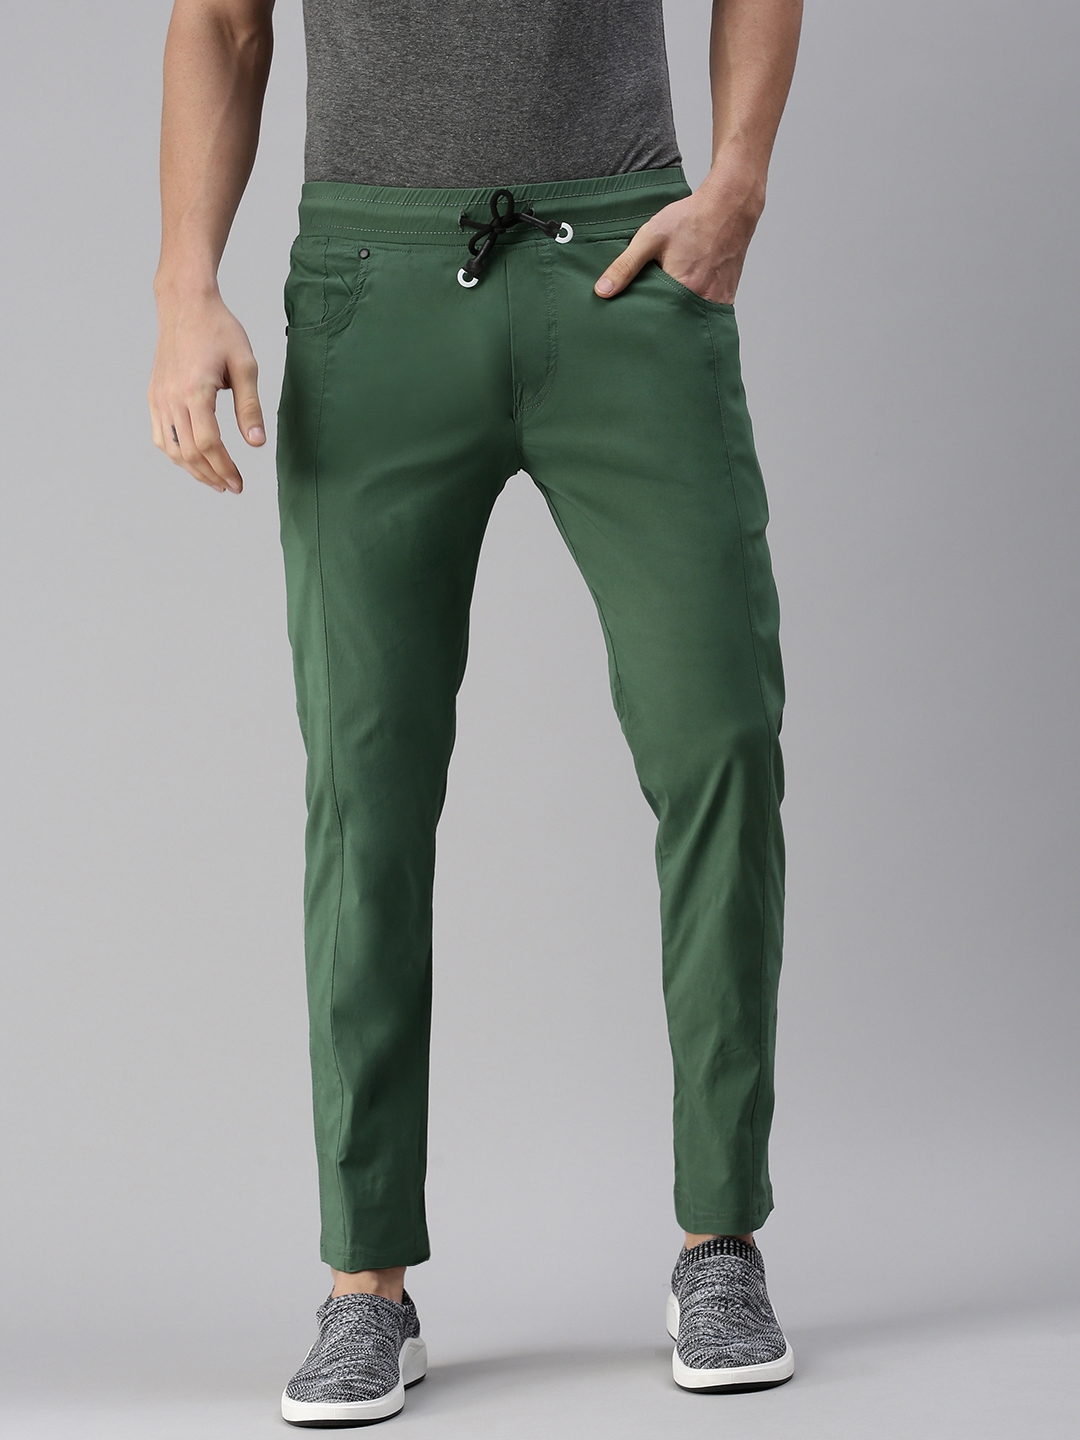 Showoff | SHOWOFF Men's Solid Cotton Green Regular Fit Track Pants